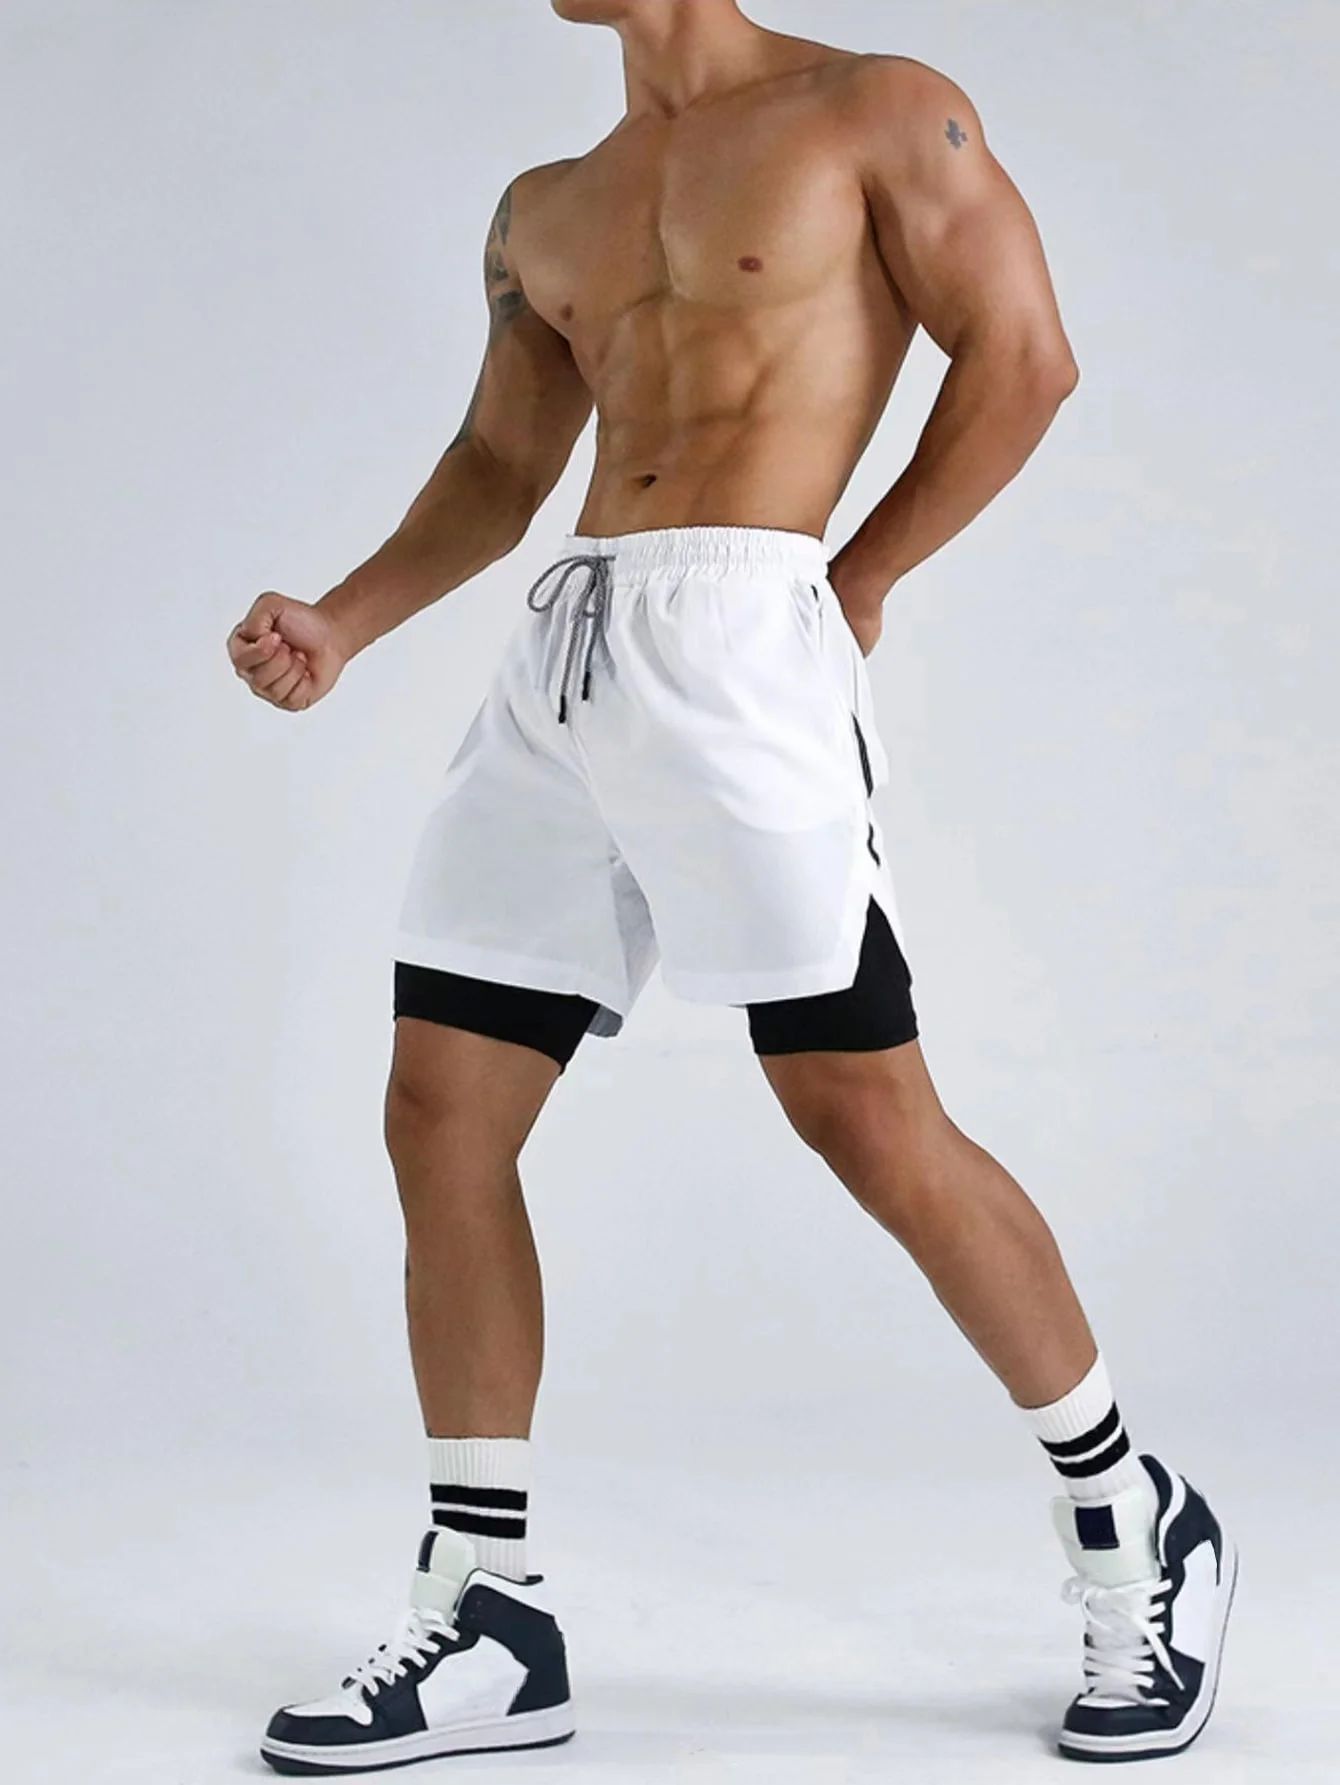 Futó rövidnadrág Férfi fitness Sport Kocogás dupla réteg nadrág sport ruhákat képzés sport, sport rövidnadrág férfi nyári nikkel